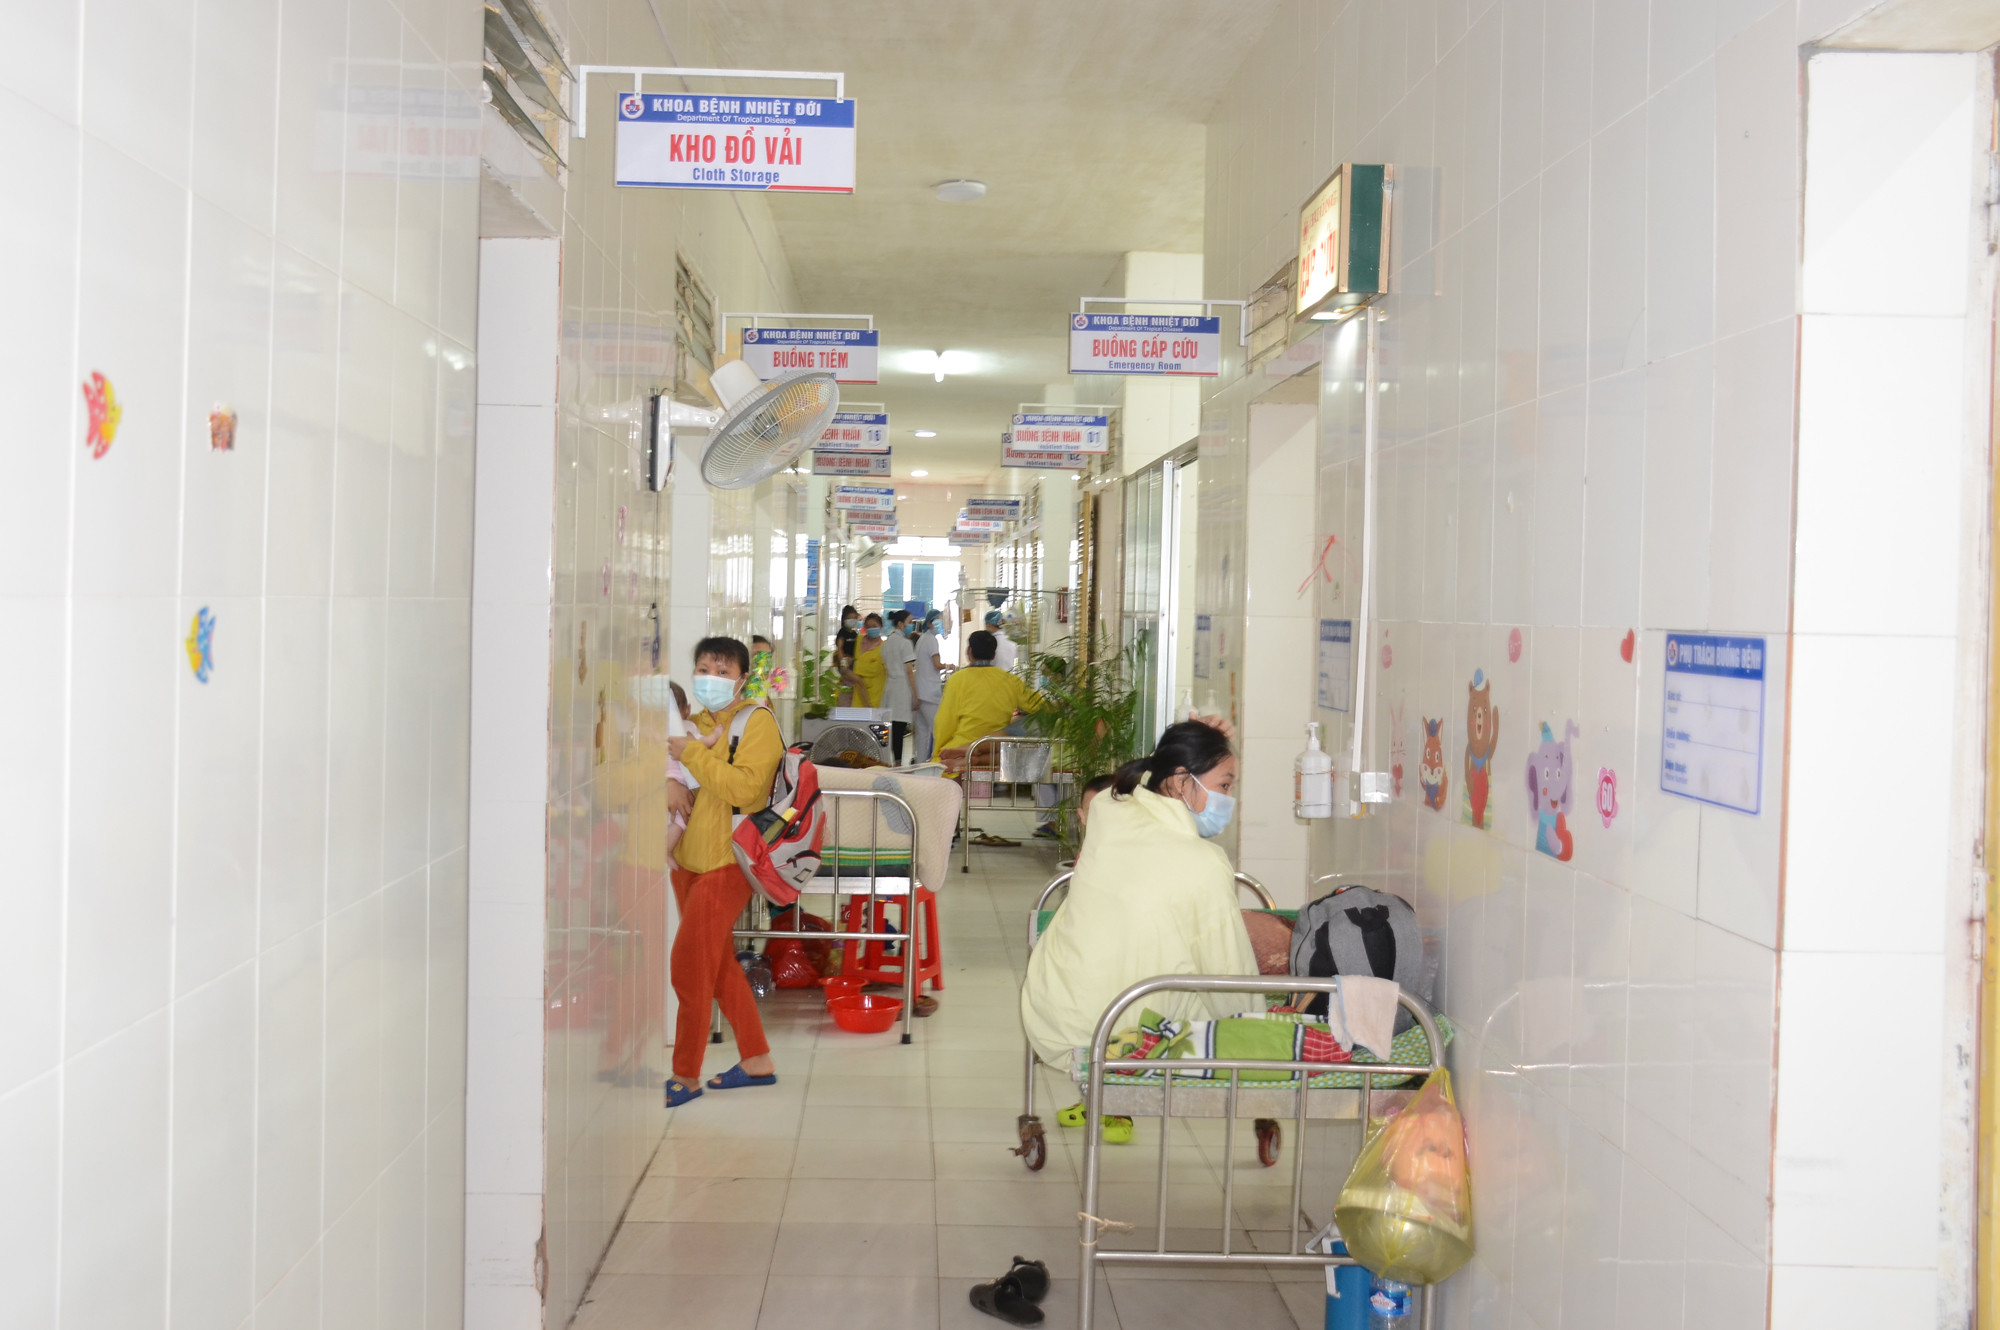 Khoa Bệnh Nhiệt đới hiện có 151 bệnh nhân thì có tới 132 bệnh nhân mắc viêm màng não. Ảnh: Thành Chung